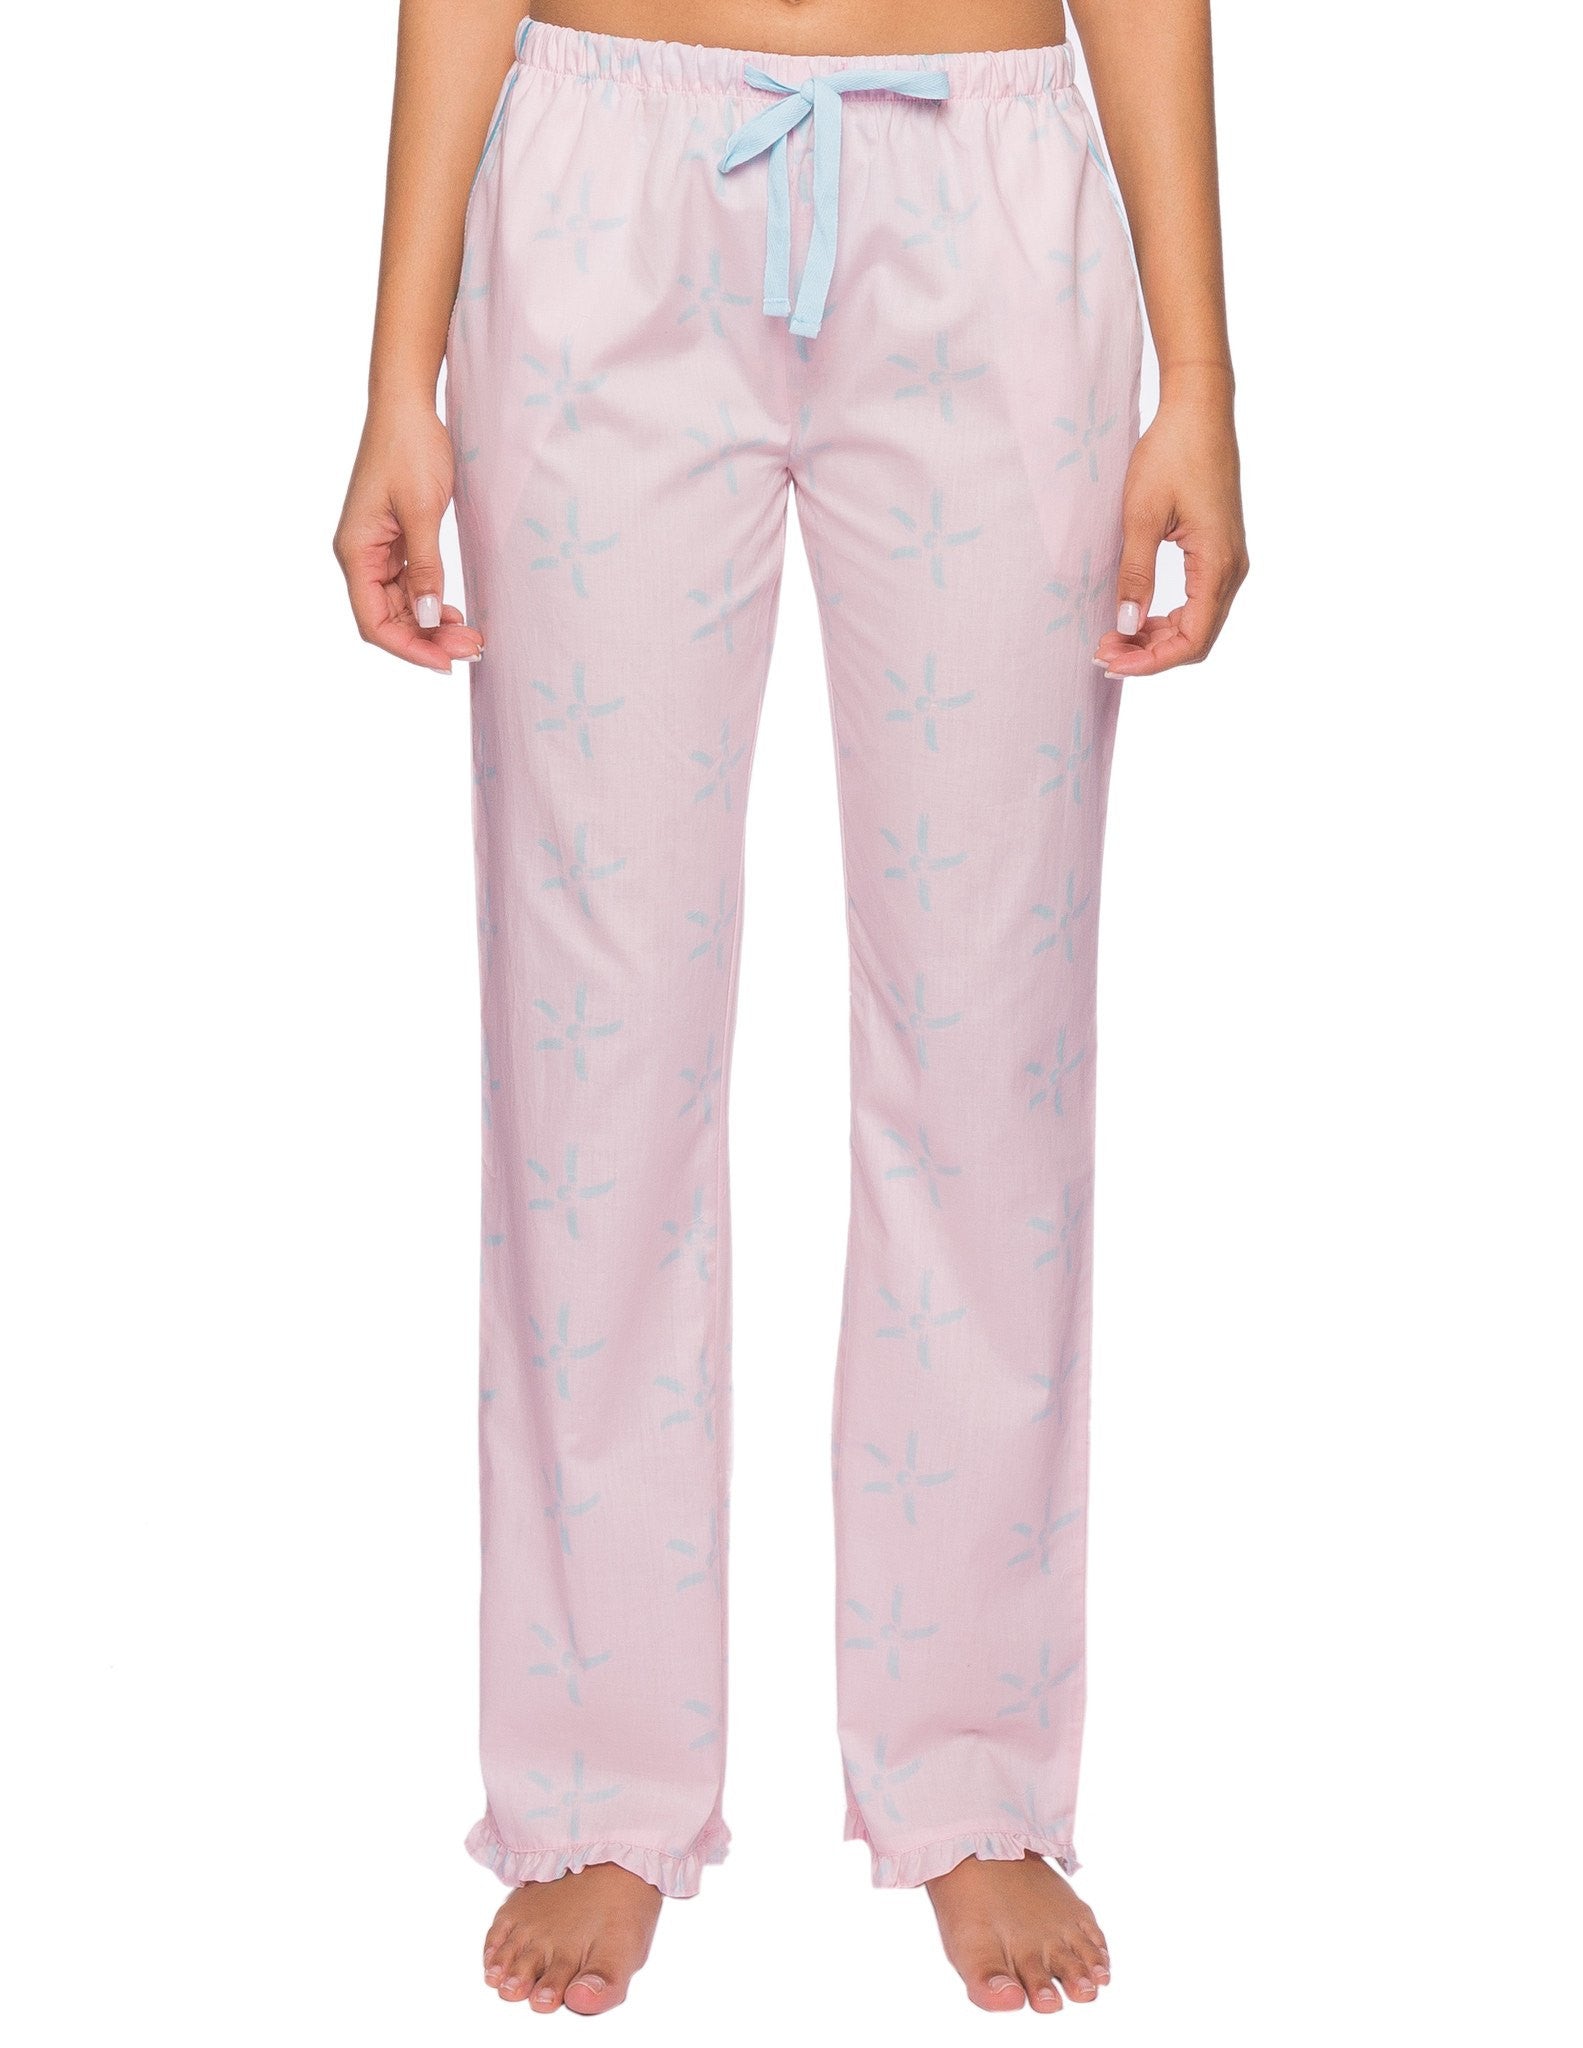 Dreams & Co. Women's Plus Size Knit Sleep Pant - L, Gray : Target